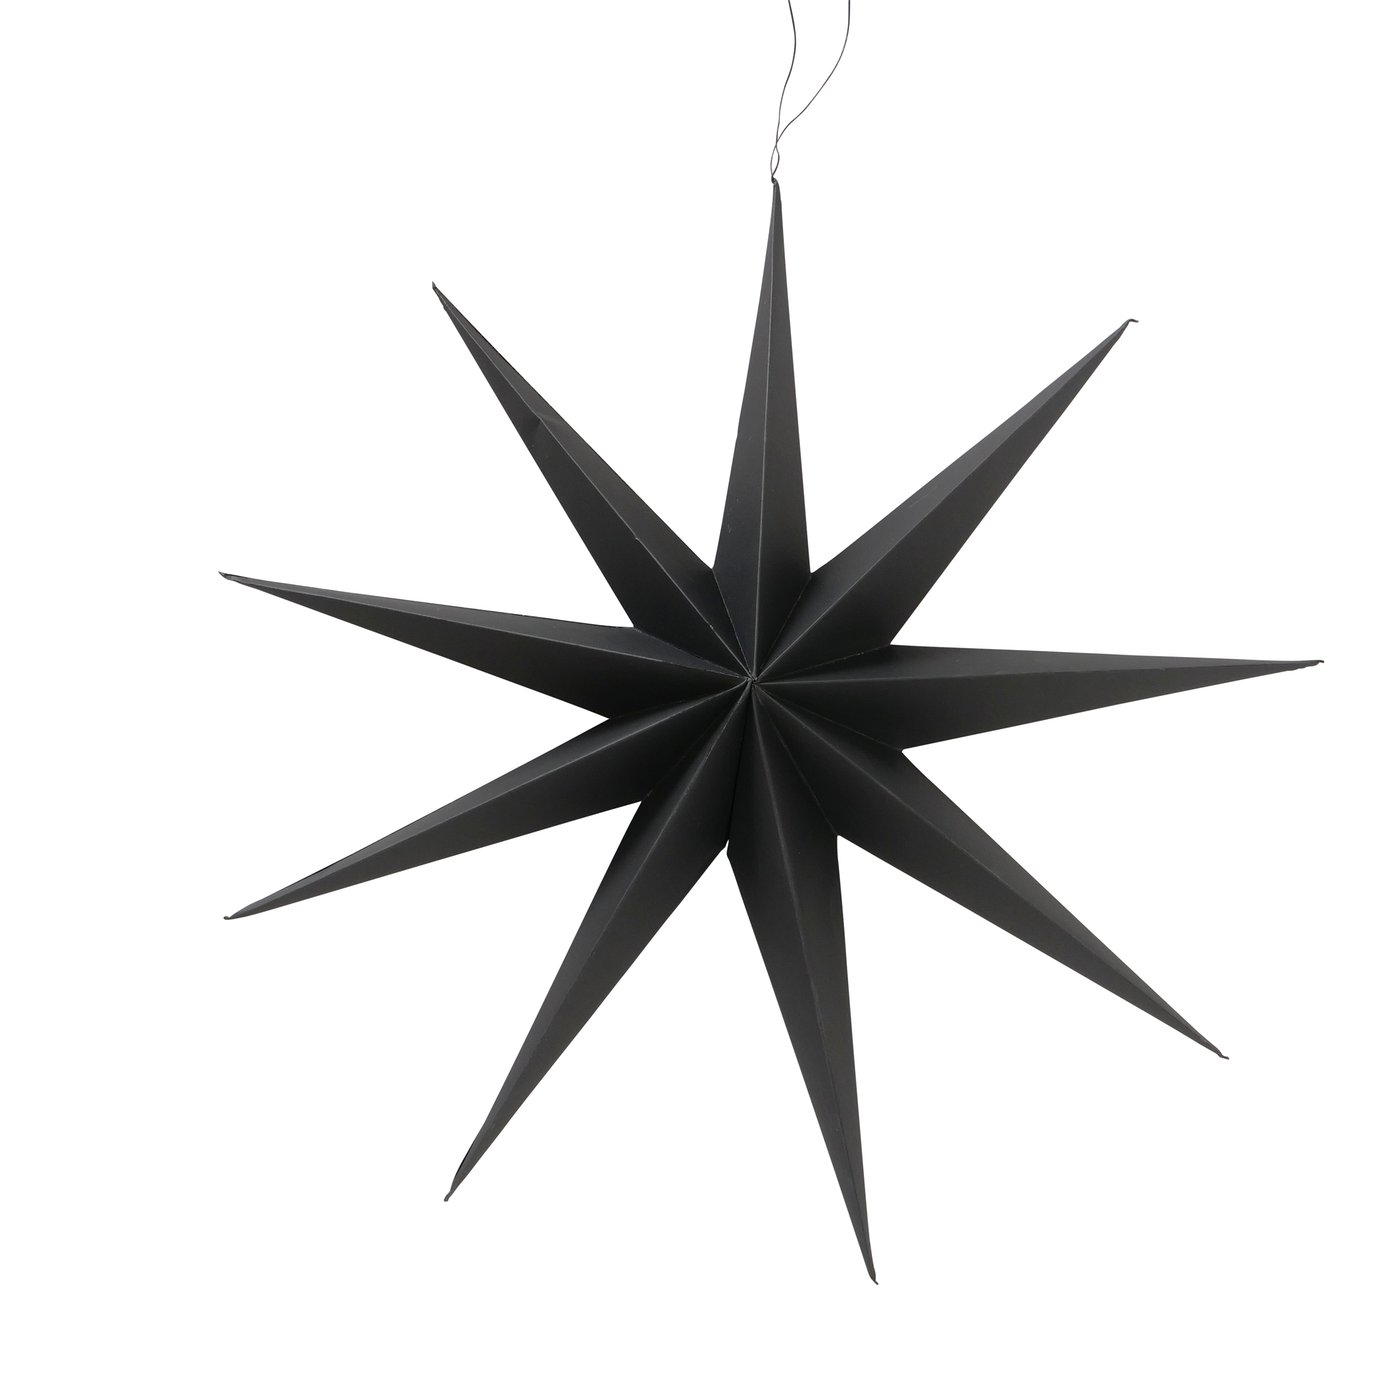 Papier Dekoanhänger Stern "Kassia" schwarz mit 9 Zacken, D60cm, 2023889, 4066076054916, Boltze xmas, Weihnachtsstern 